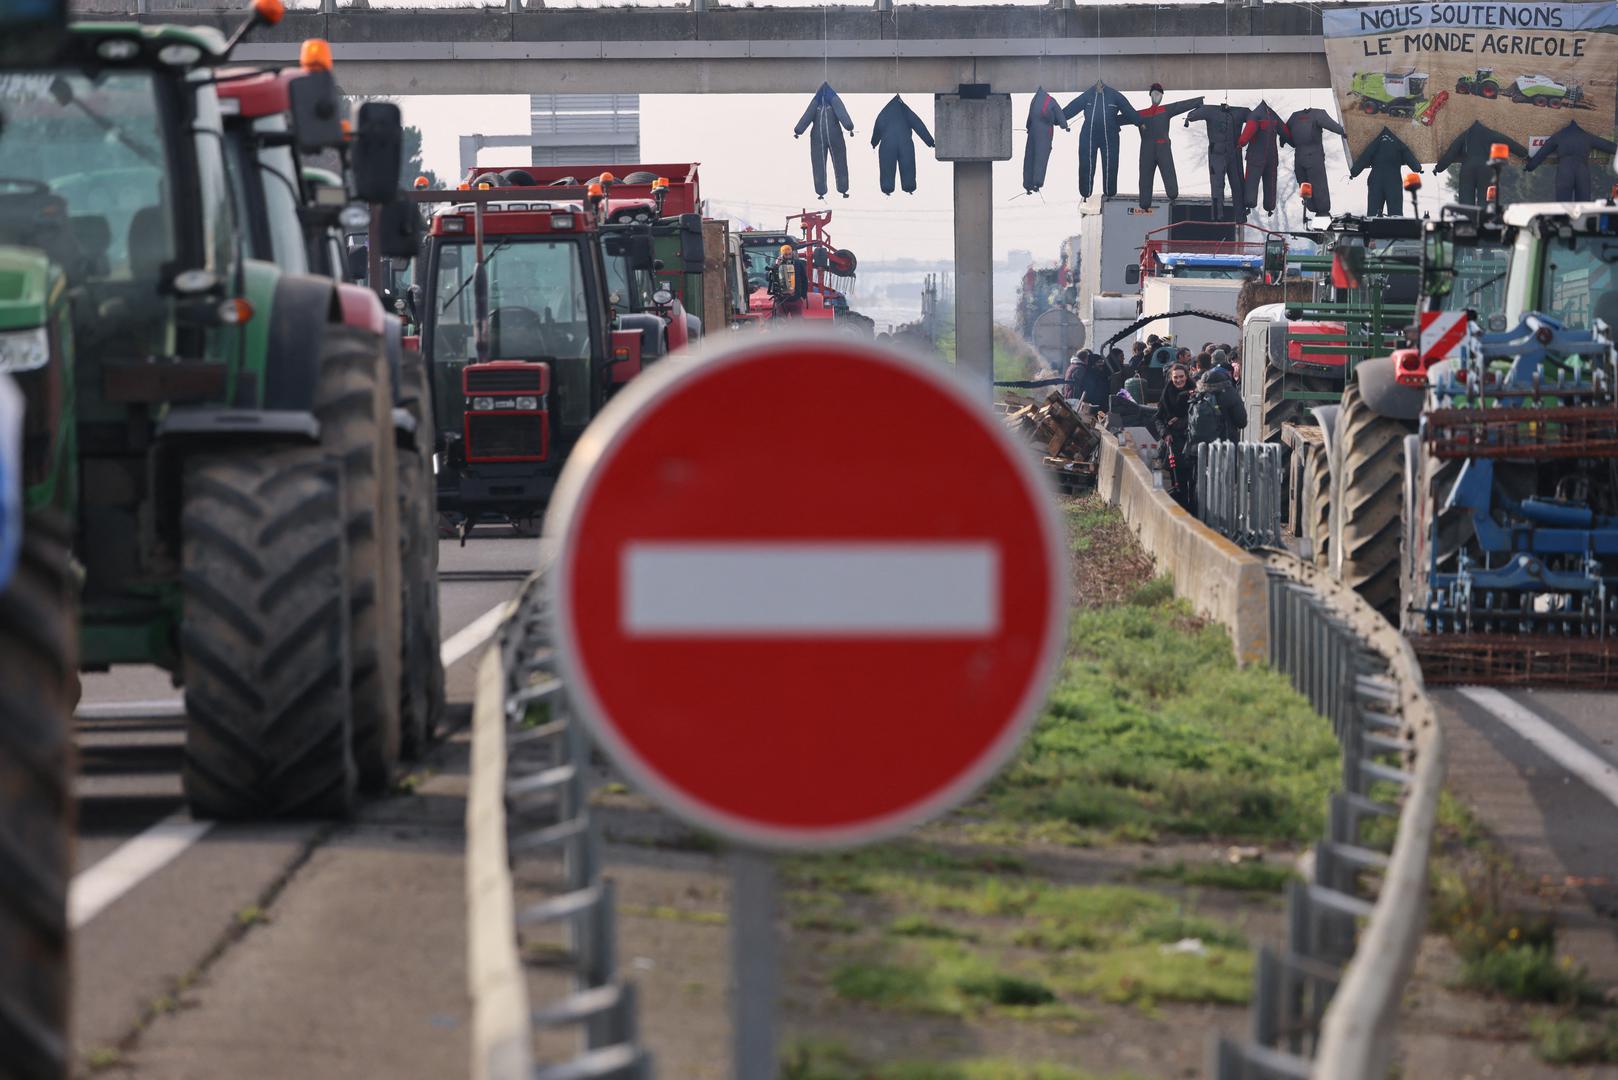 Francuska želi ovaj tjedan donijeti odluku o promjeni propisa Europske unije o zaštiti okoliša vezano uz poljoprivredne površine koje moraju ostati neobrađene prema novim pravilima o bioraznolikosti, kako bi pomogla francuskim poljoprivrednicima, rekao je u ponedjeljak ministar poljoprivrede Marc Fesneau.